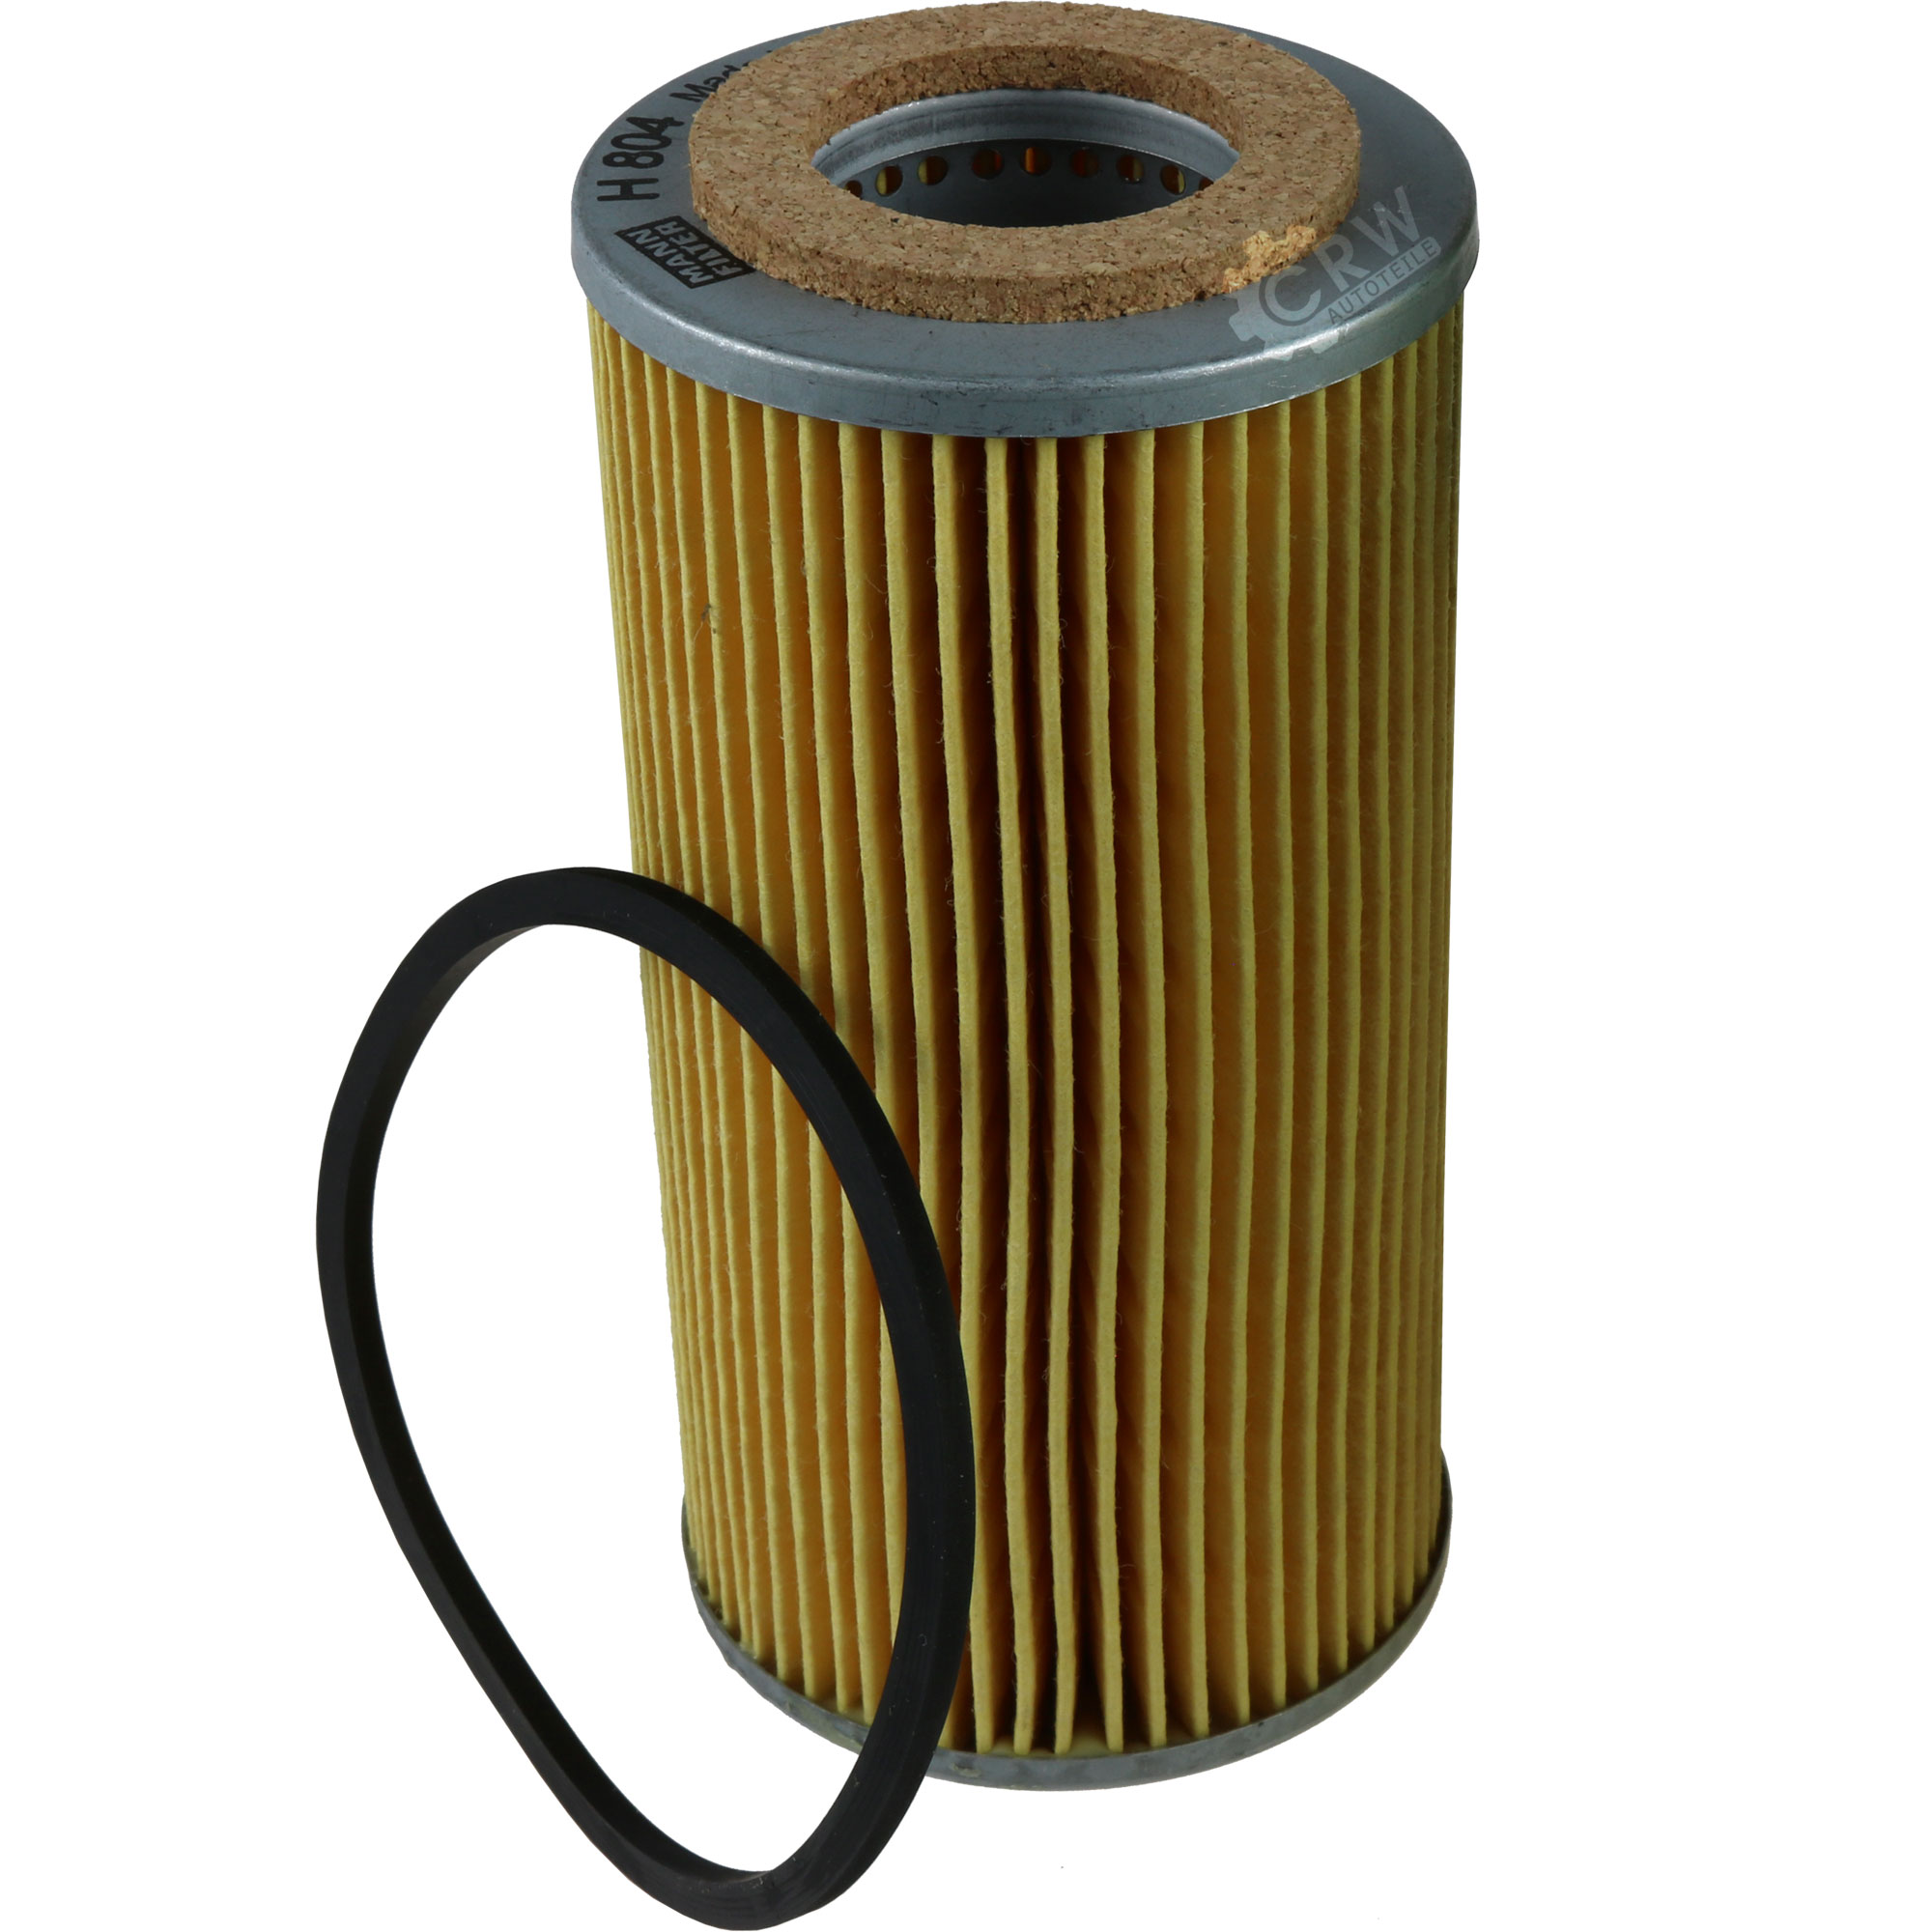 5x Man-filterh 804 X Oil Filter Oil Filter | eBay